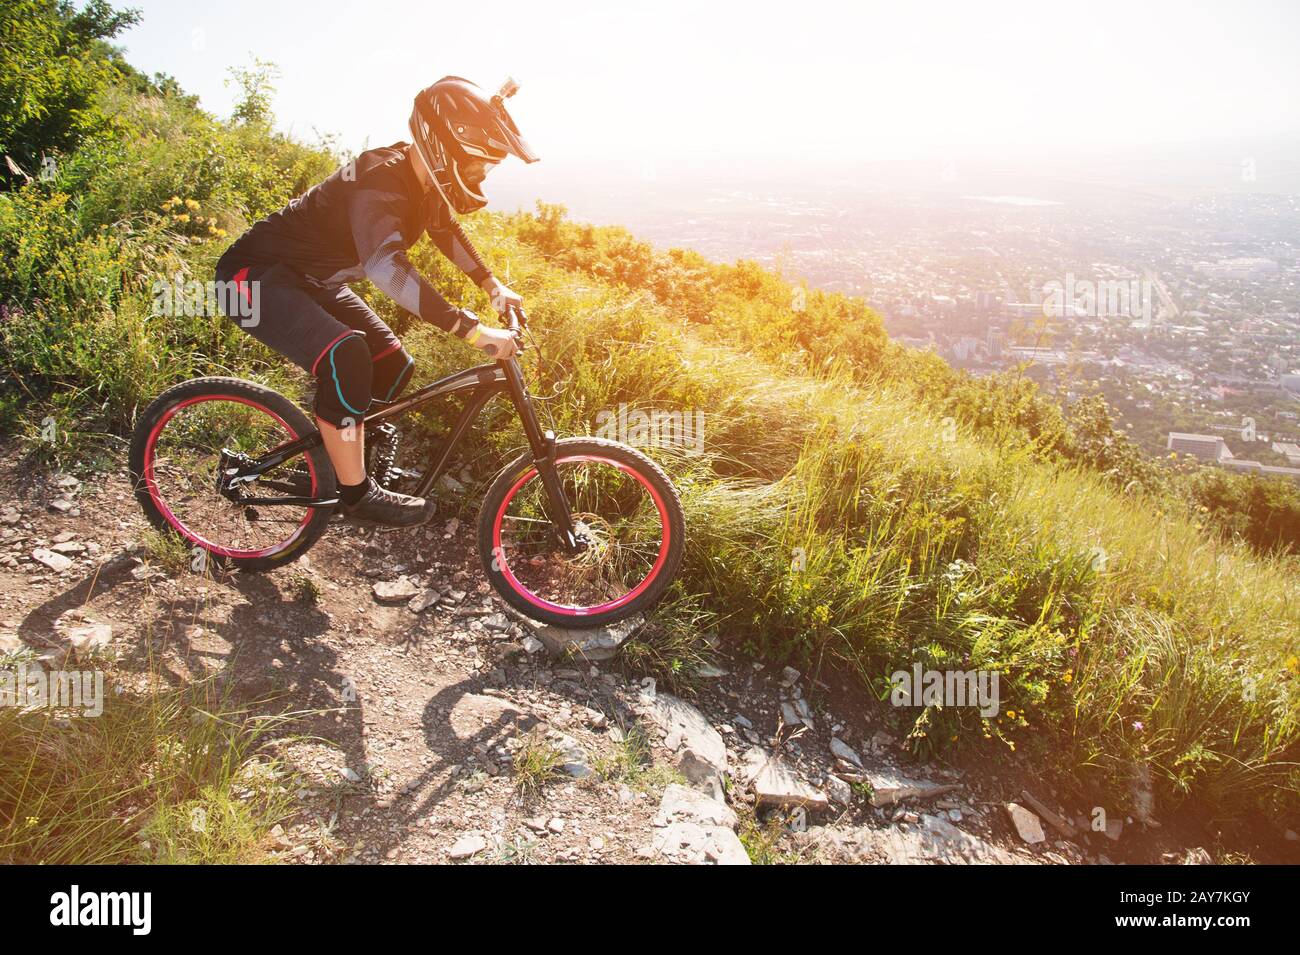 Ein Fahrer in einem Helm reitet auf einem Schotterweg von einem Berghang auf einem Mountainbike-Rad Stockfoto